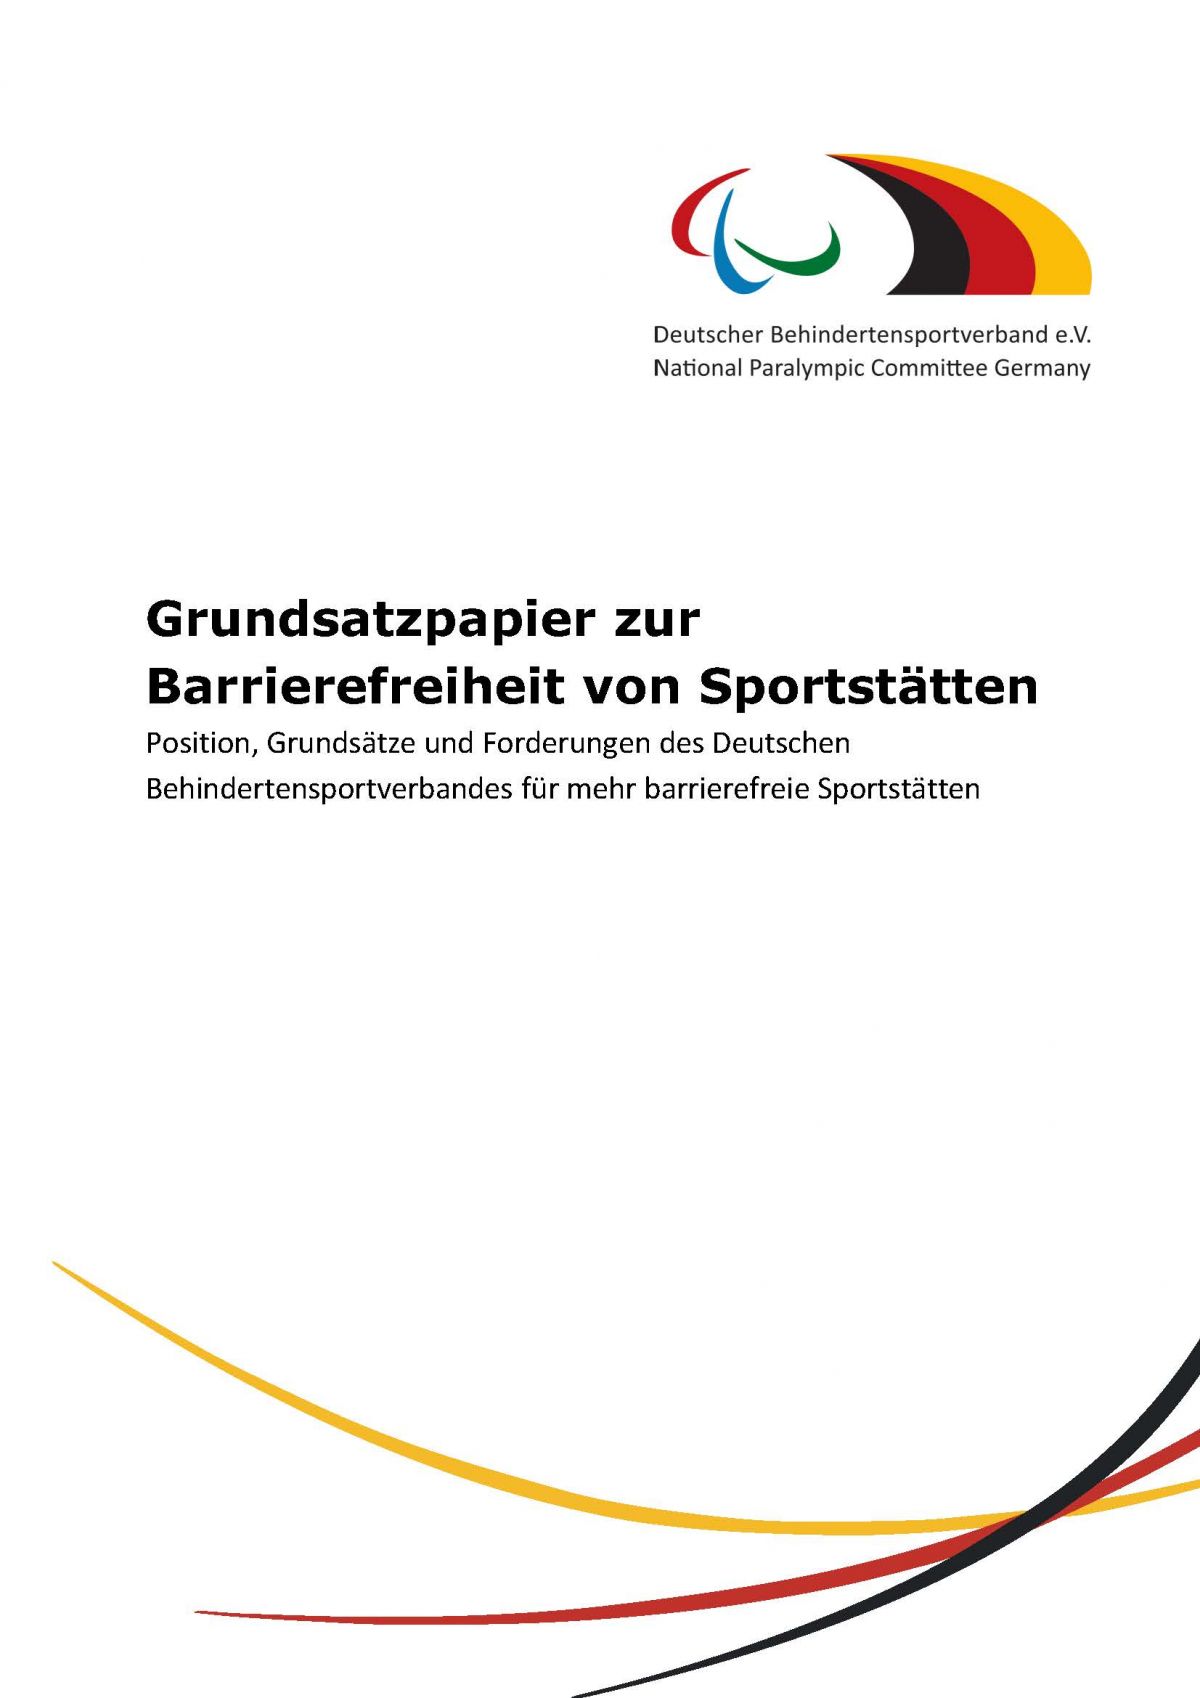 Titelseite: Grundsatzpapier des DBS zu barrierefreien Sportstätten